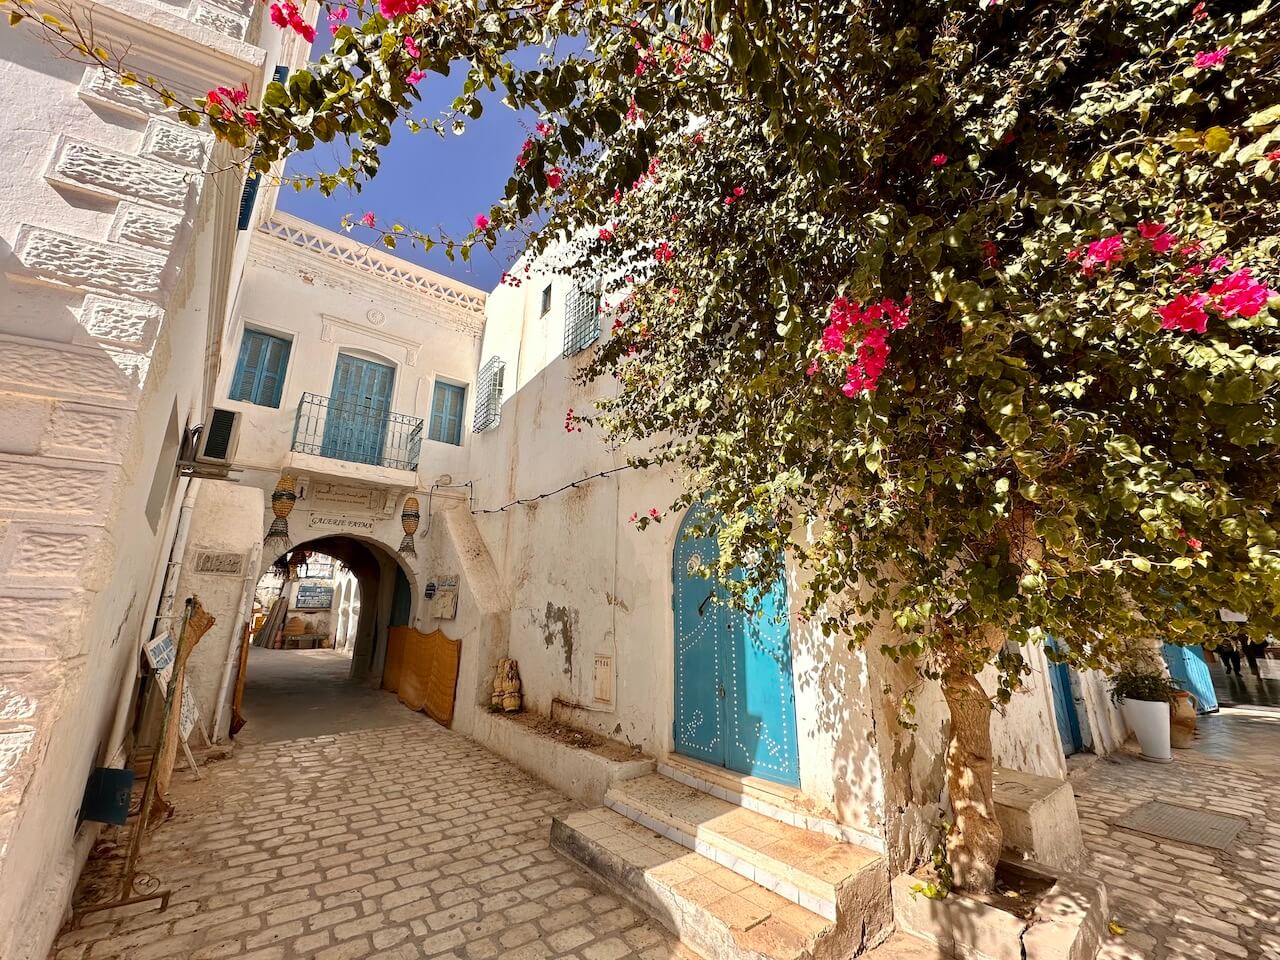 Tunisia, Djerba - Medina of Houmt Souk